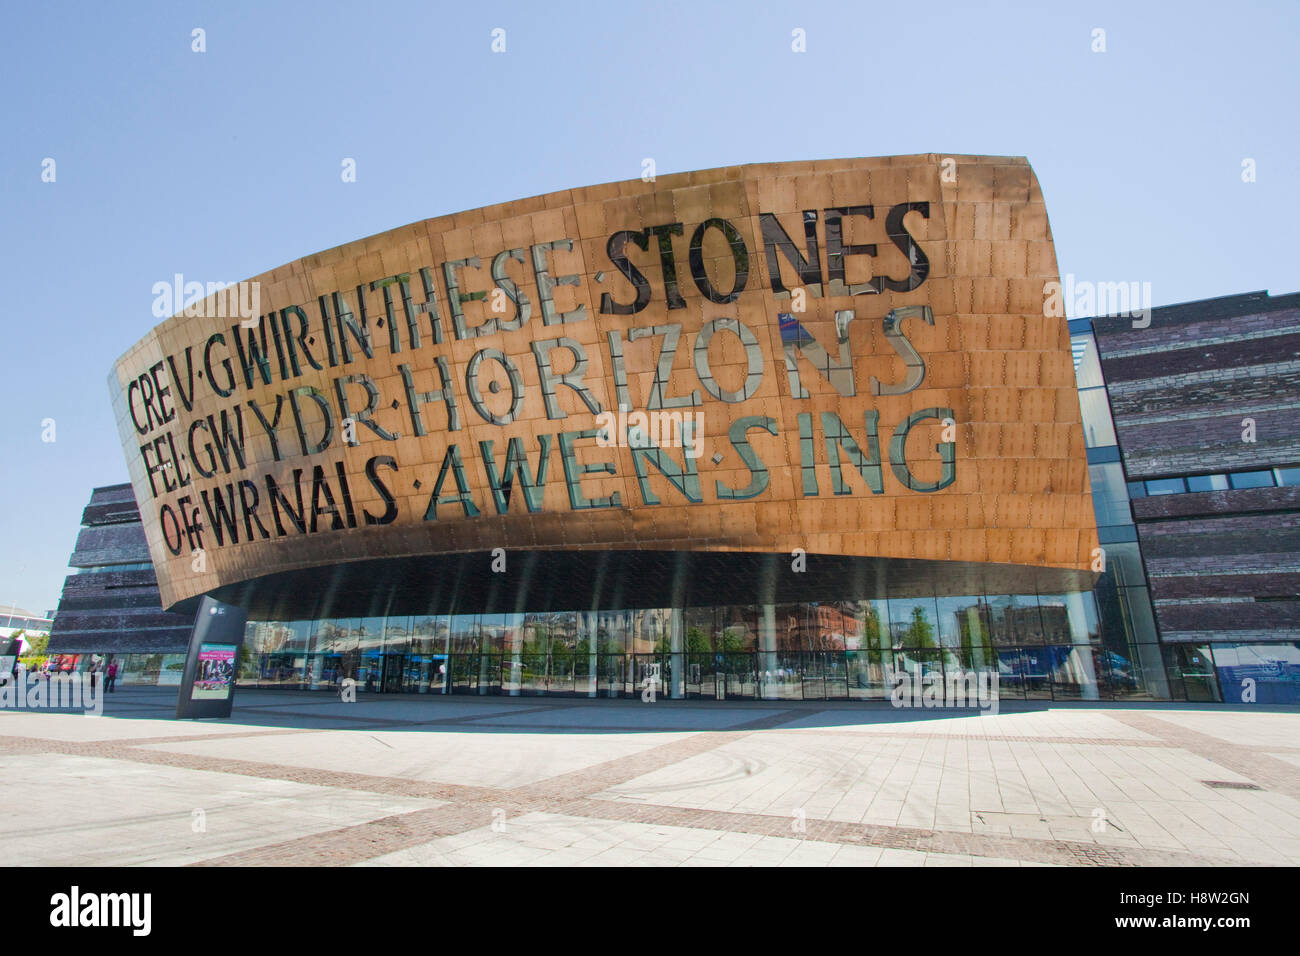 Canolfan Mileniwm Cymru, Wales Millennium Centre, building entrance, Cardiff Bay, Wales, United Kingdom, Europe Stock Photo